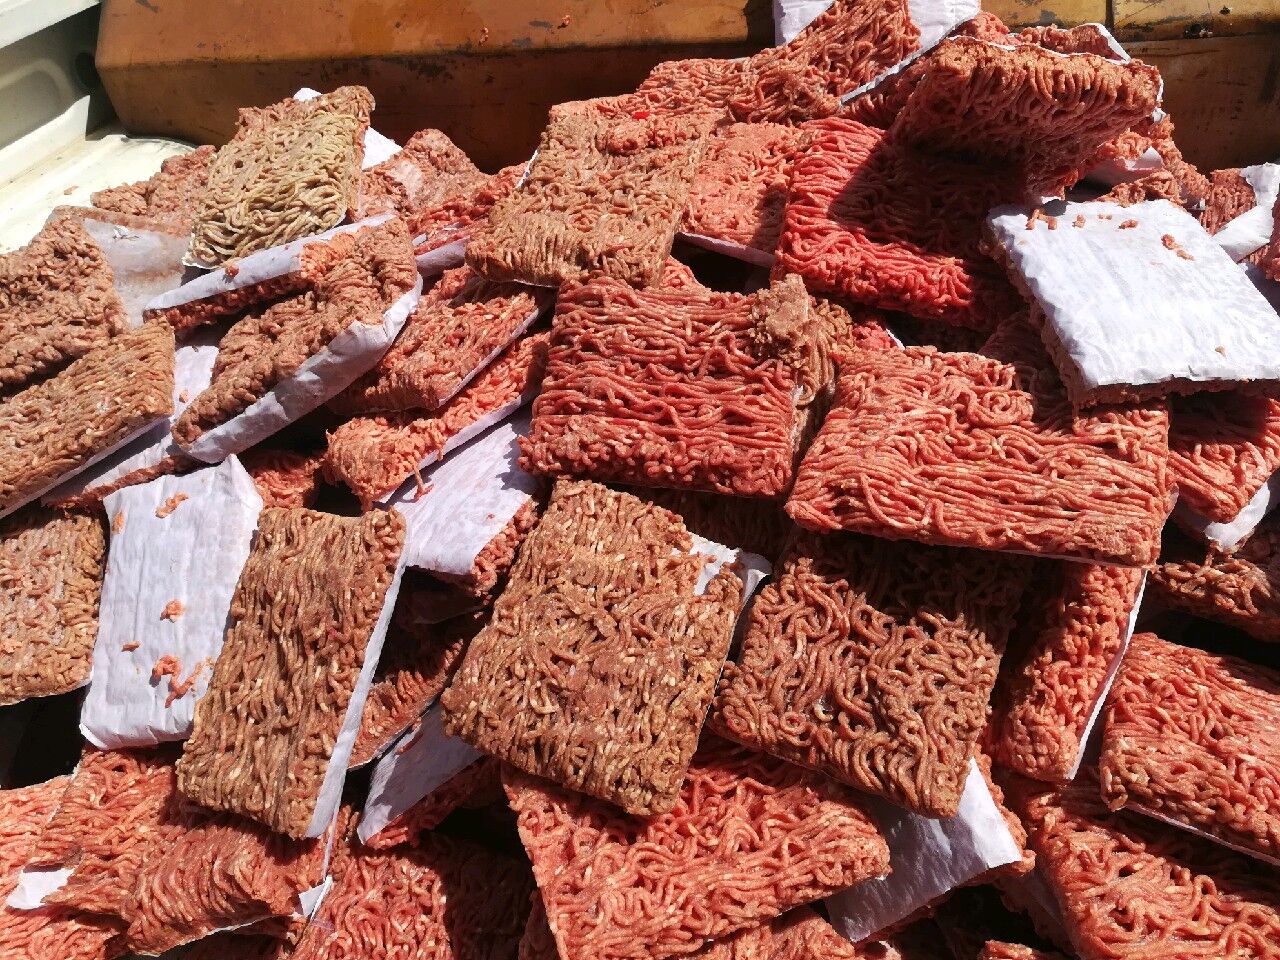 ۲۷۵ کیلوگرم گوشت غیربهداشتی در مشهد کشف شد